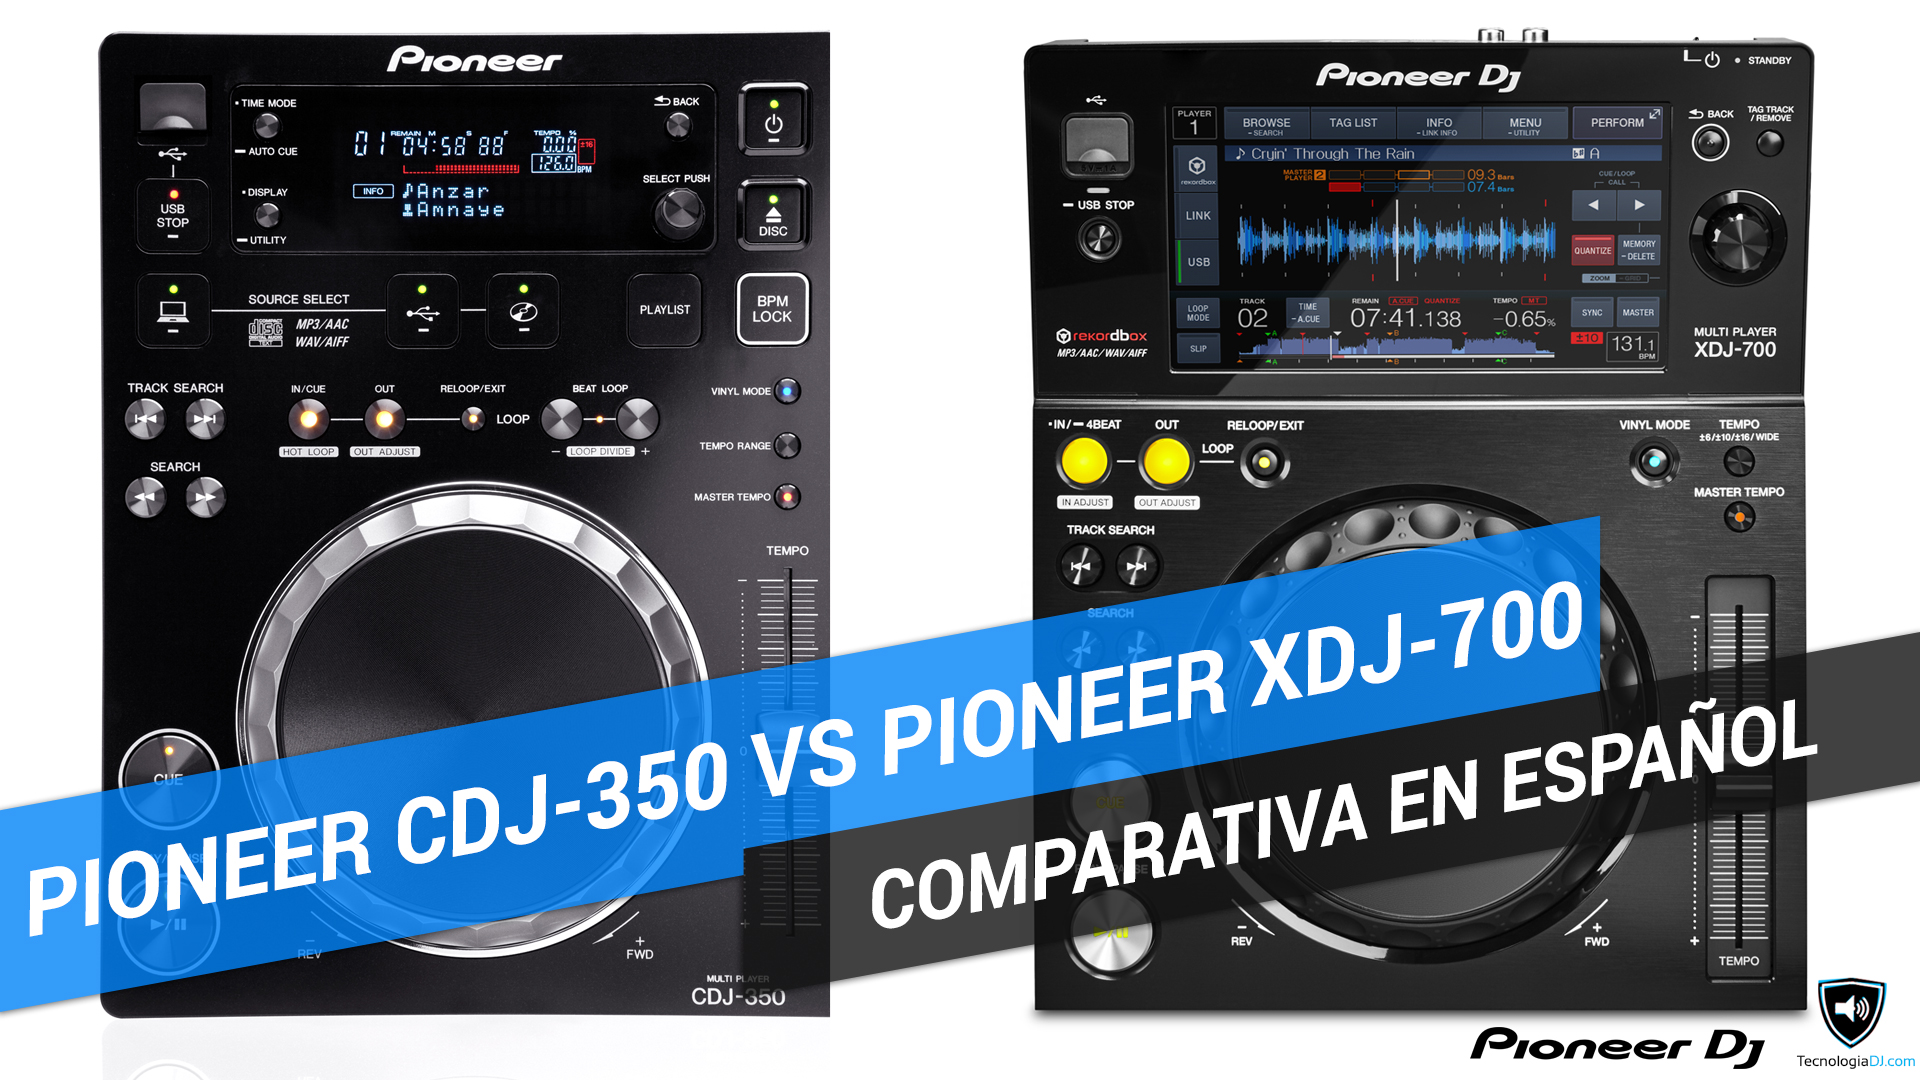 Comparativa reproductores Pioneer CDJ-350 y Pioneer XDJ-700